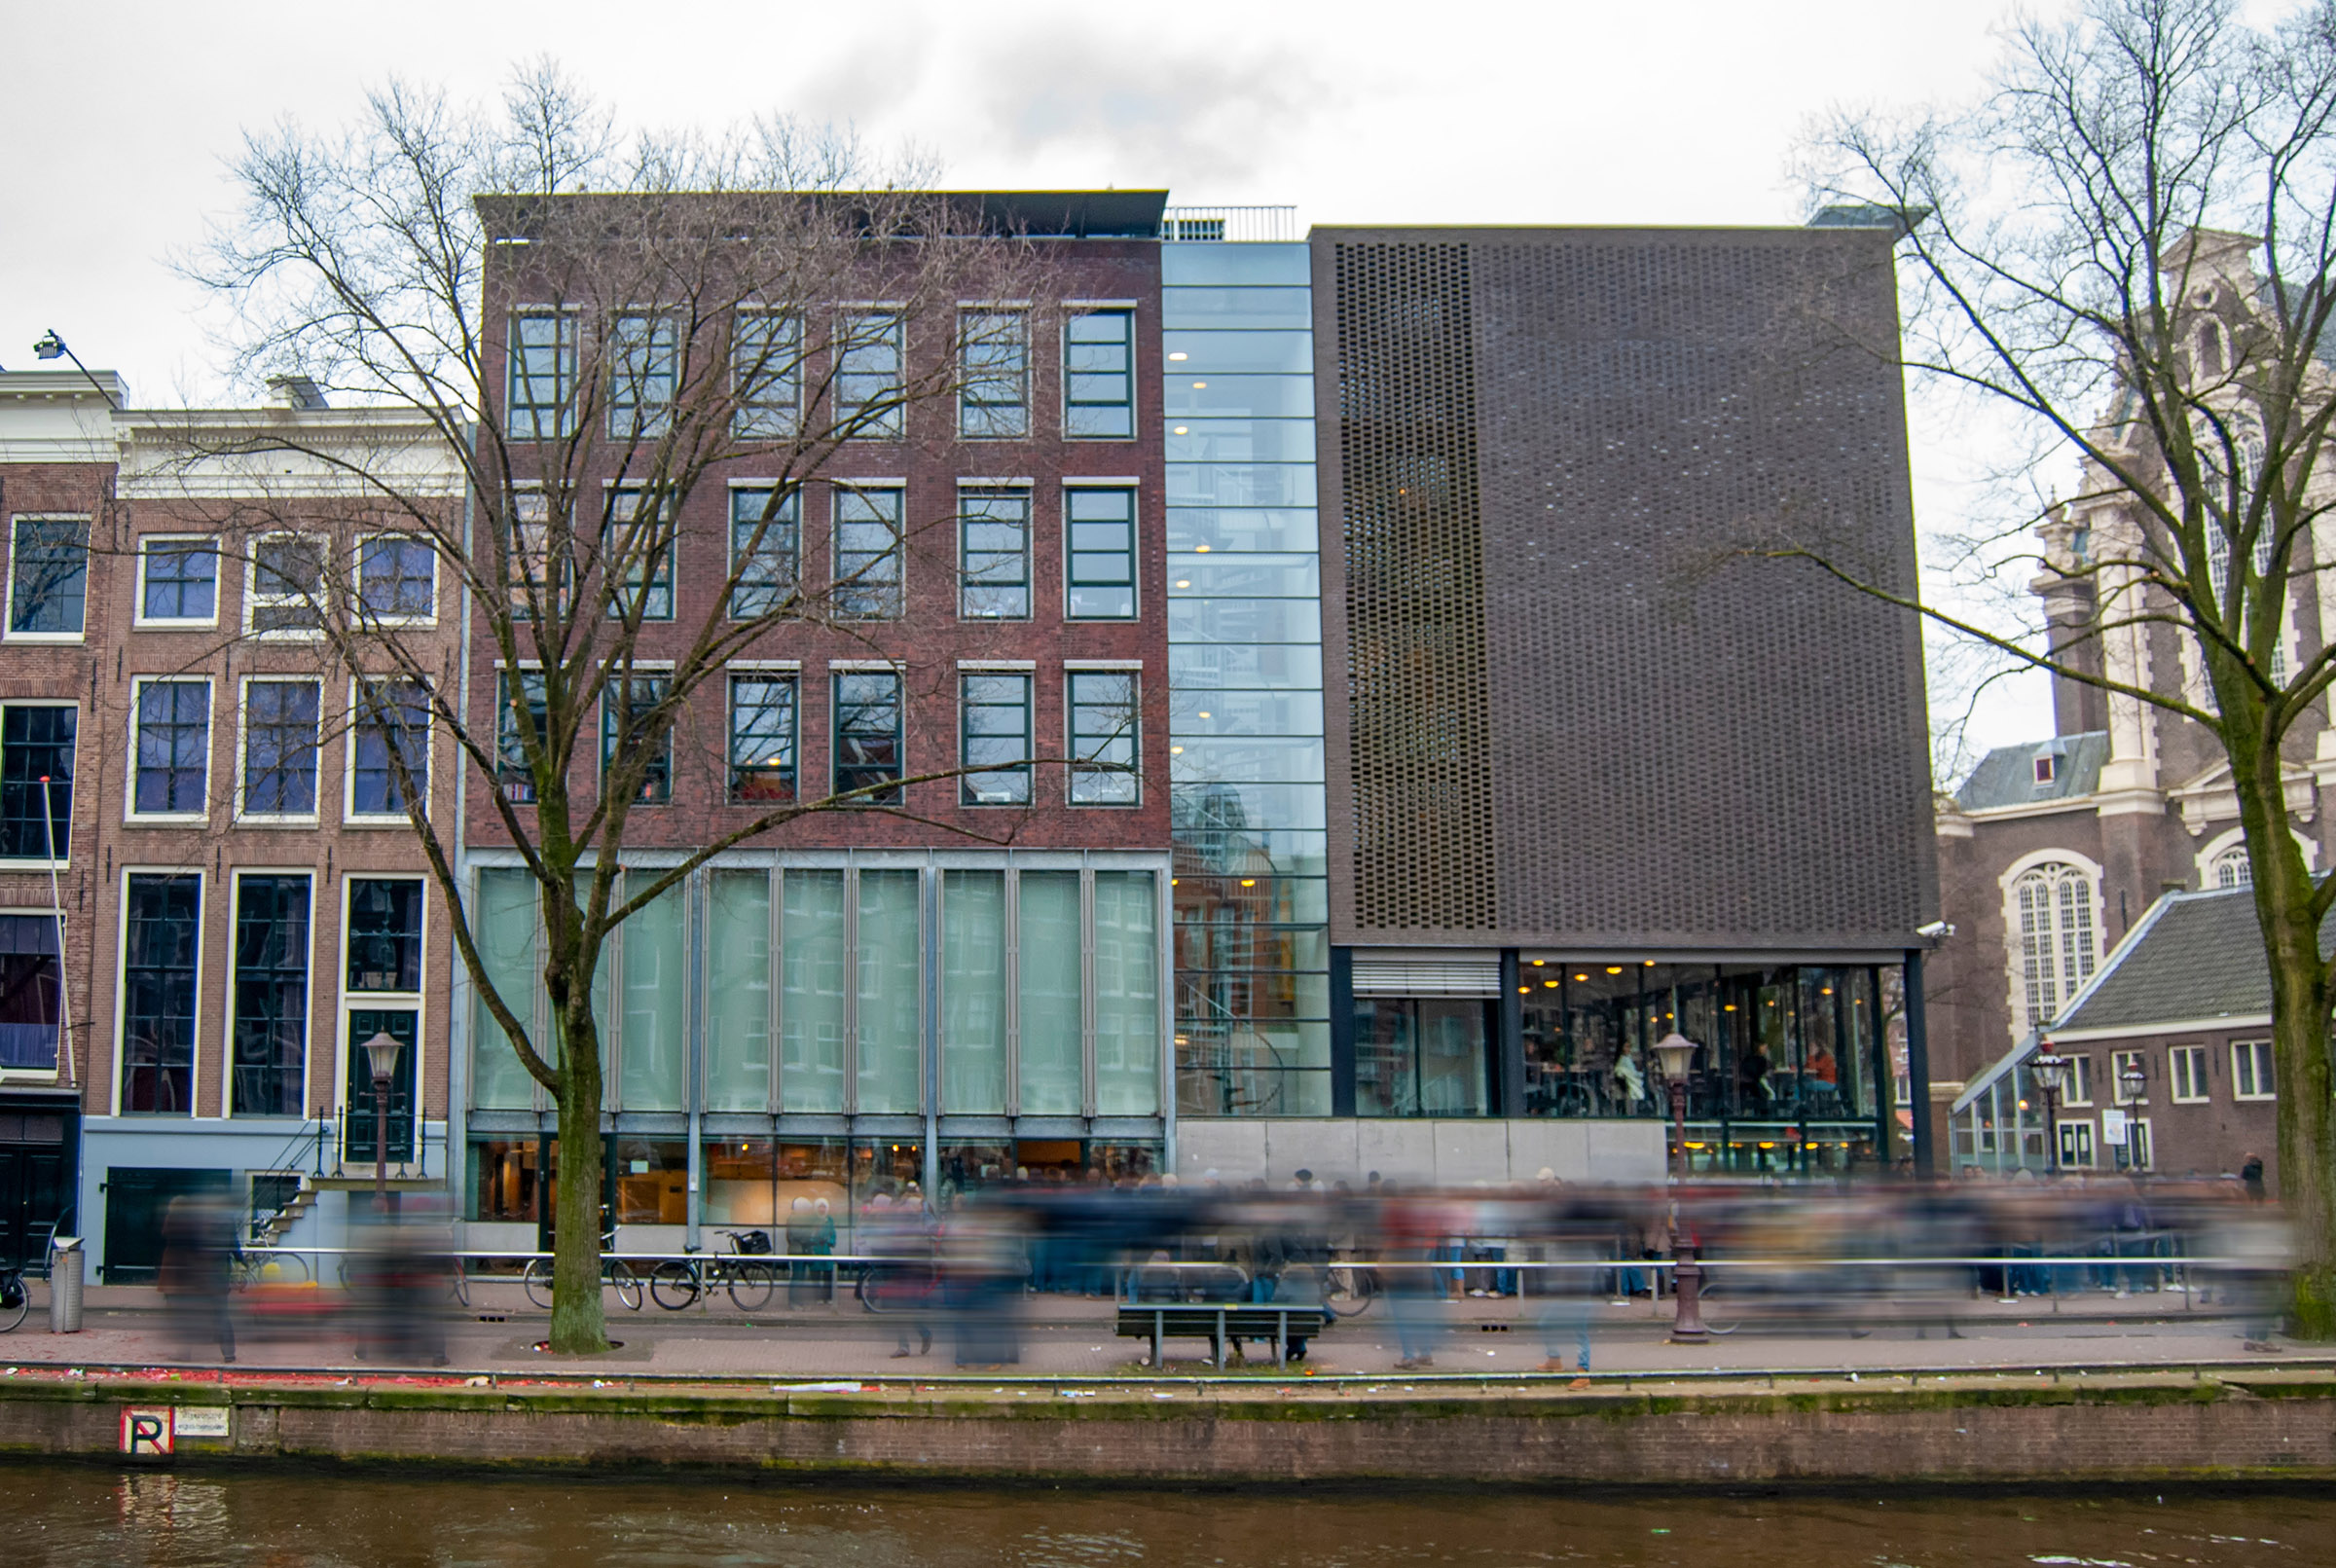 Anne Frank huis en museum in Amsterdam